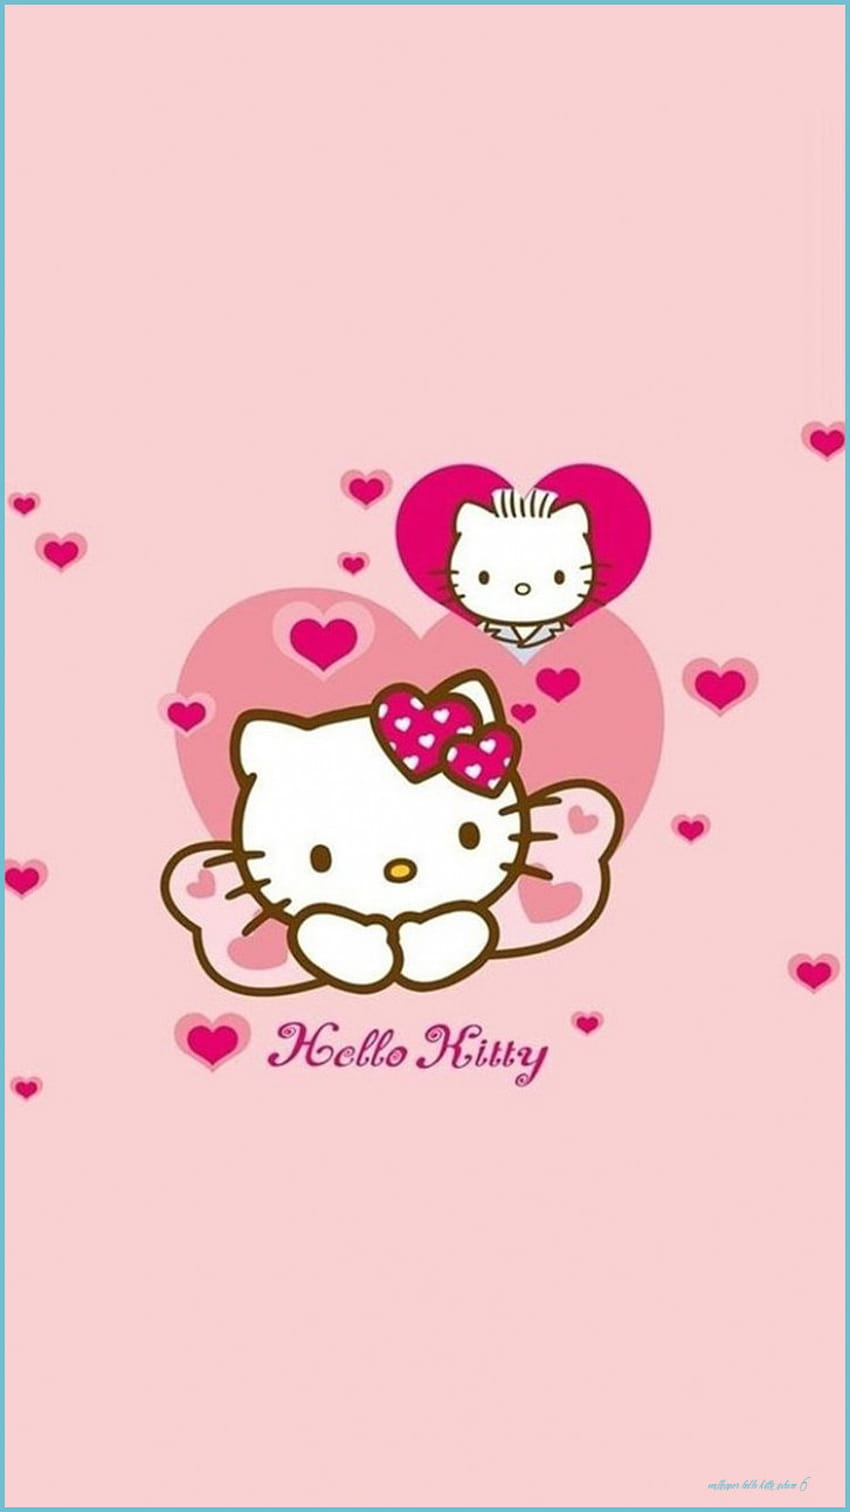 Hello Kitty on Dog, hello kitty kawaii ipad HD phone wallpaper